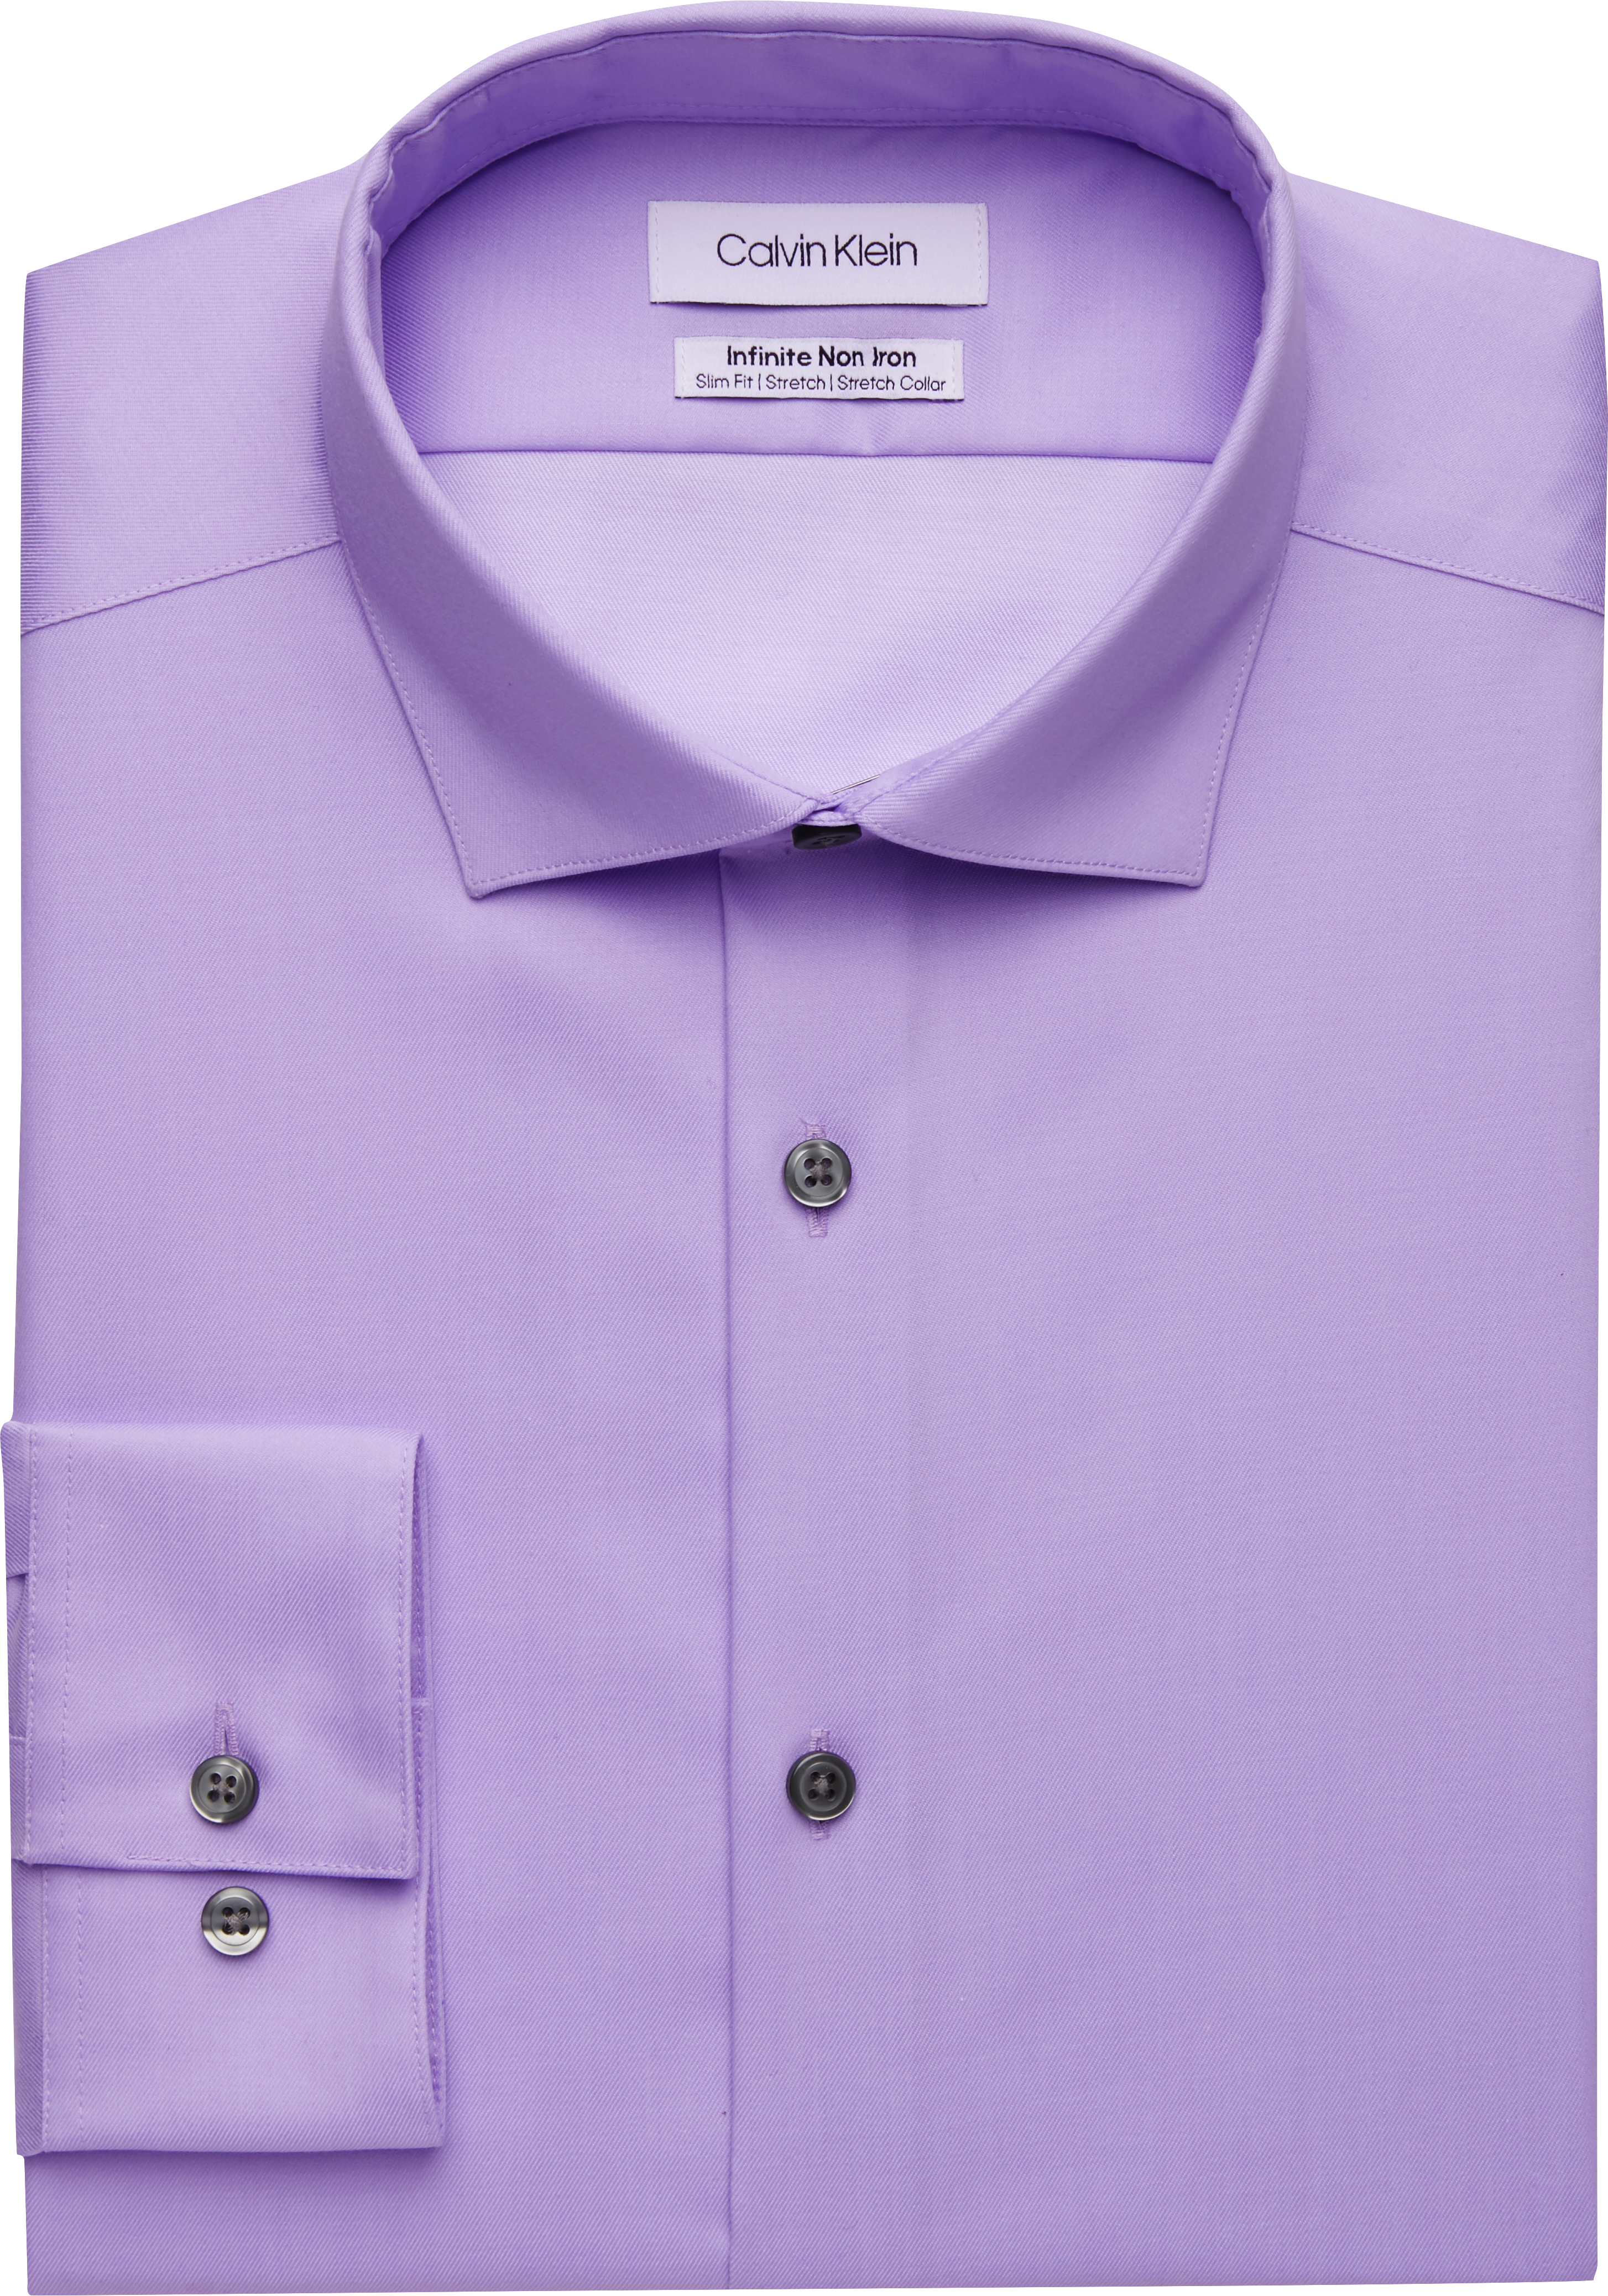 verhouding Massage Acht Calvin Klein Infinite Non-Iron Slim Fit Stretch Collar Dress Shirt, Purple  - Men's Featured | Men's